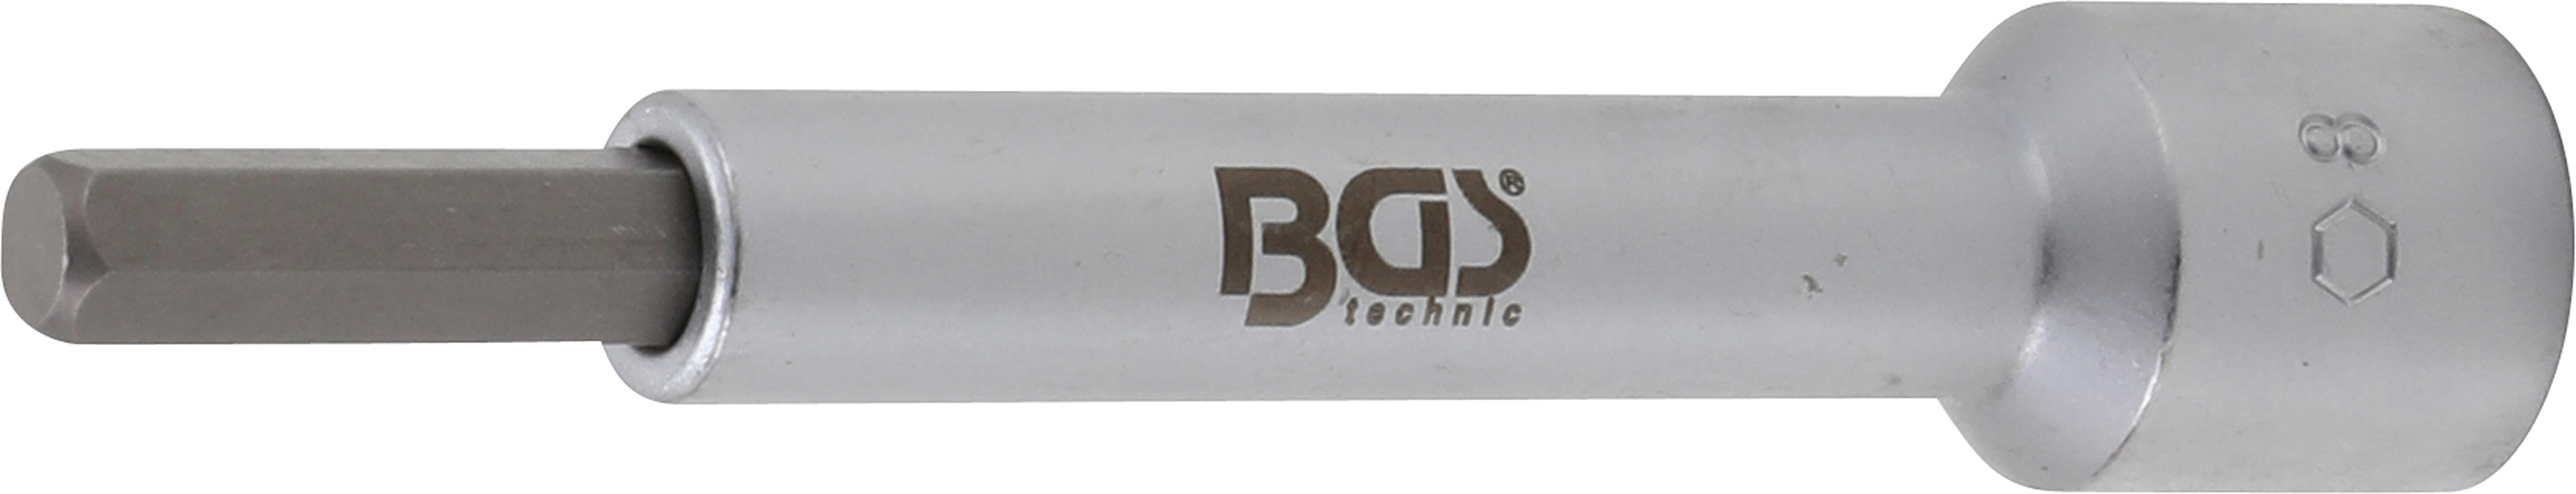 BGS Bit-Einsatz | Antrieb Innenvierkant 12,5 mm (1/2") | Innensechskant 8 mm